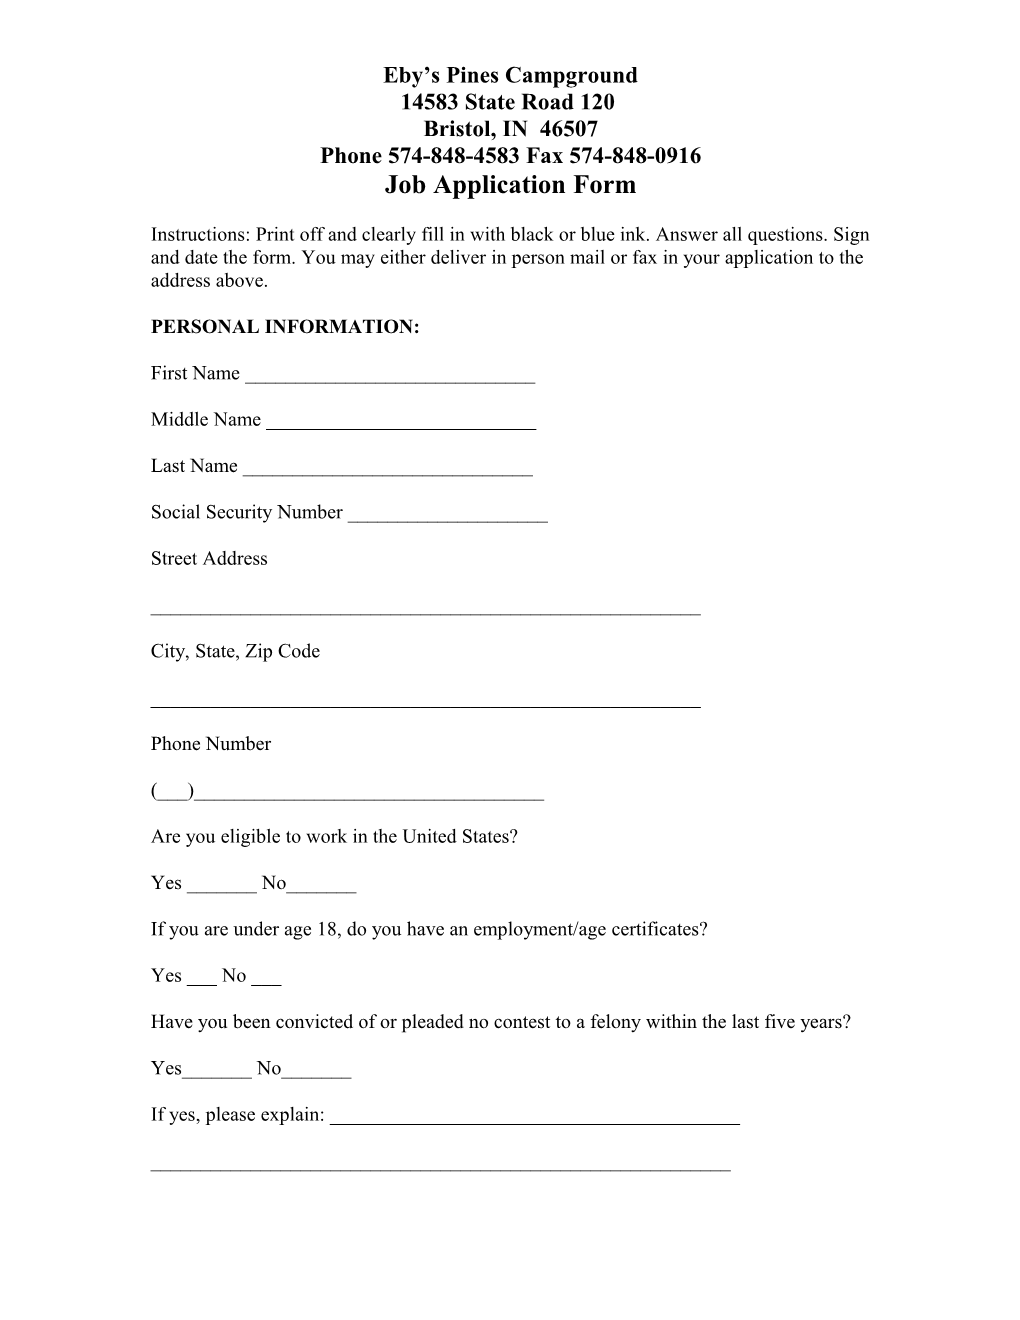 Job Application Form s4